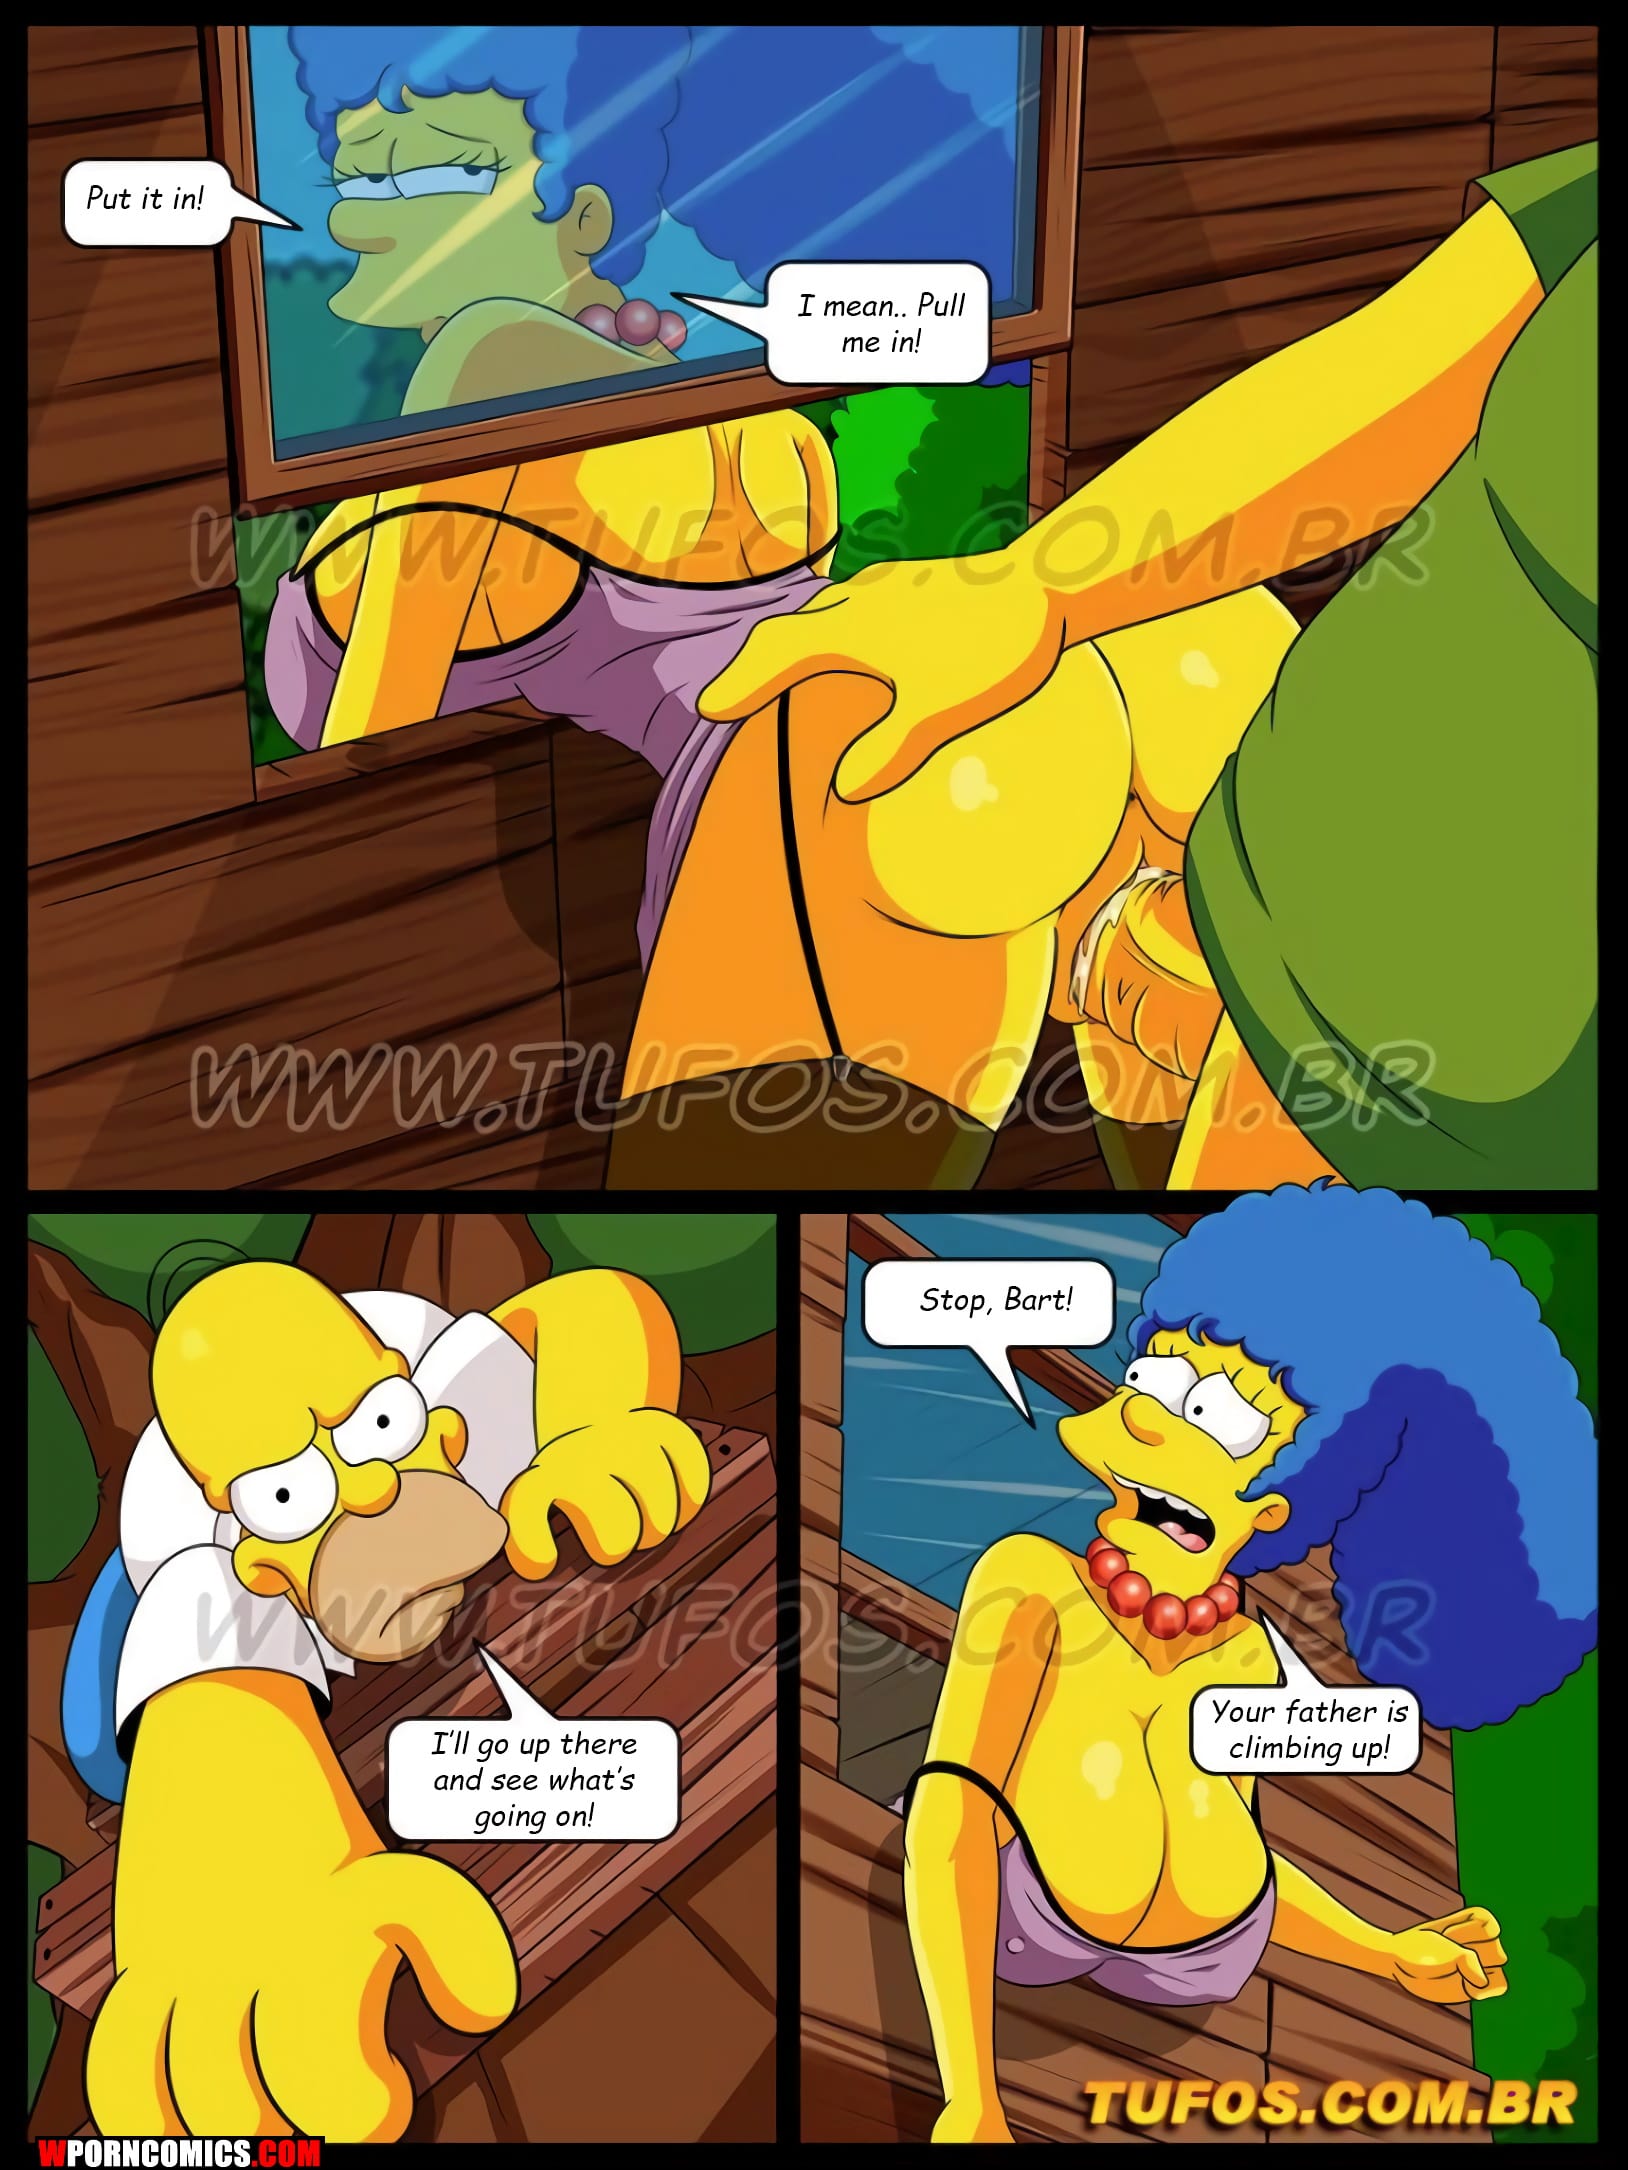 Simpsons marge nackt und bart